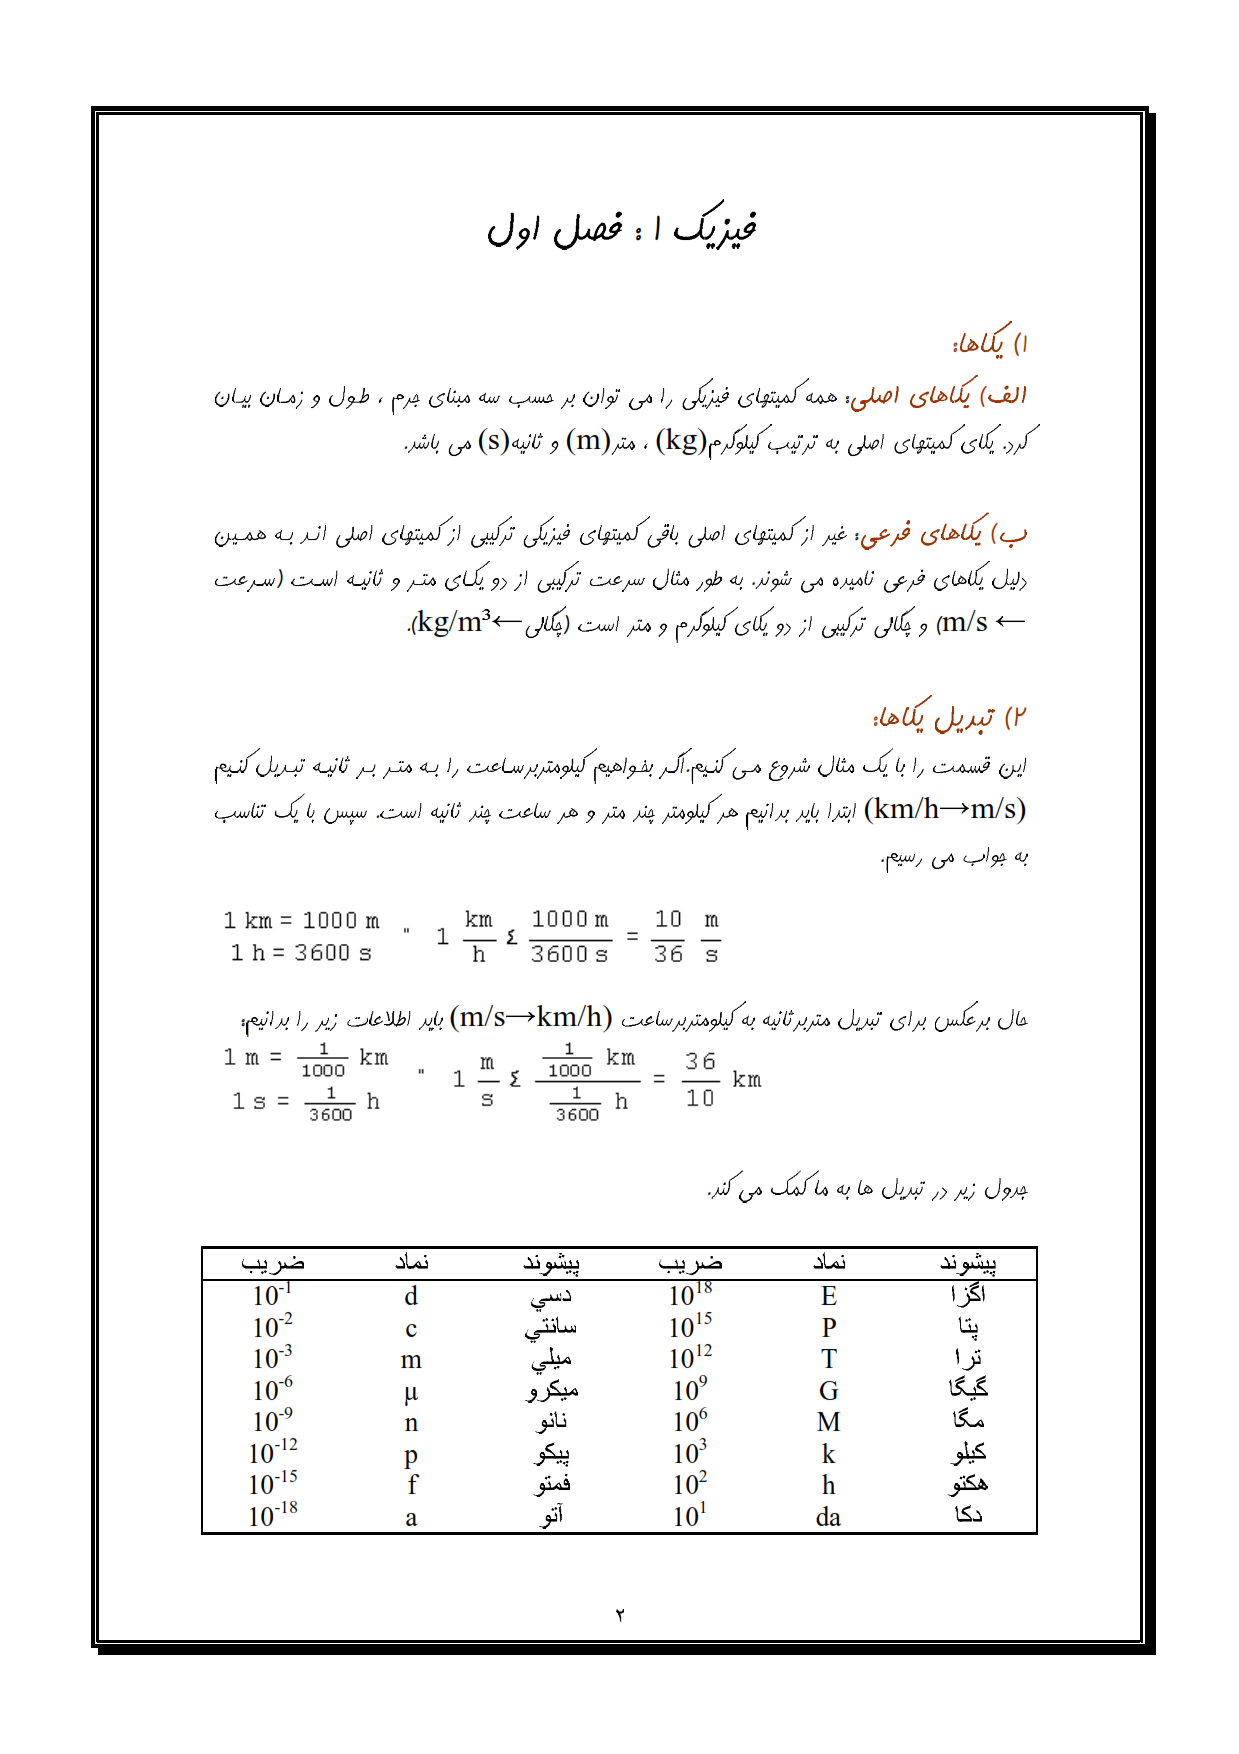 دانلود کتاب فیزیک پایه 1 مکانیک هریس بنسون به زبان فارسی فیزیک پایه یک هریس بنسون فارسی pdf